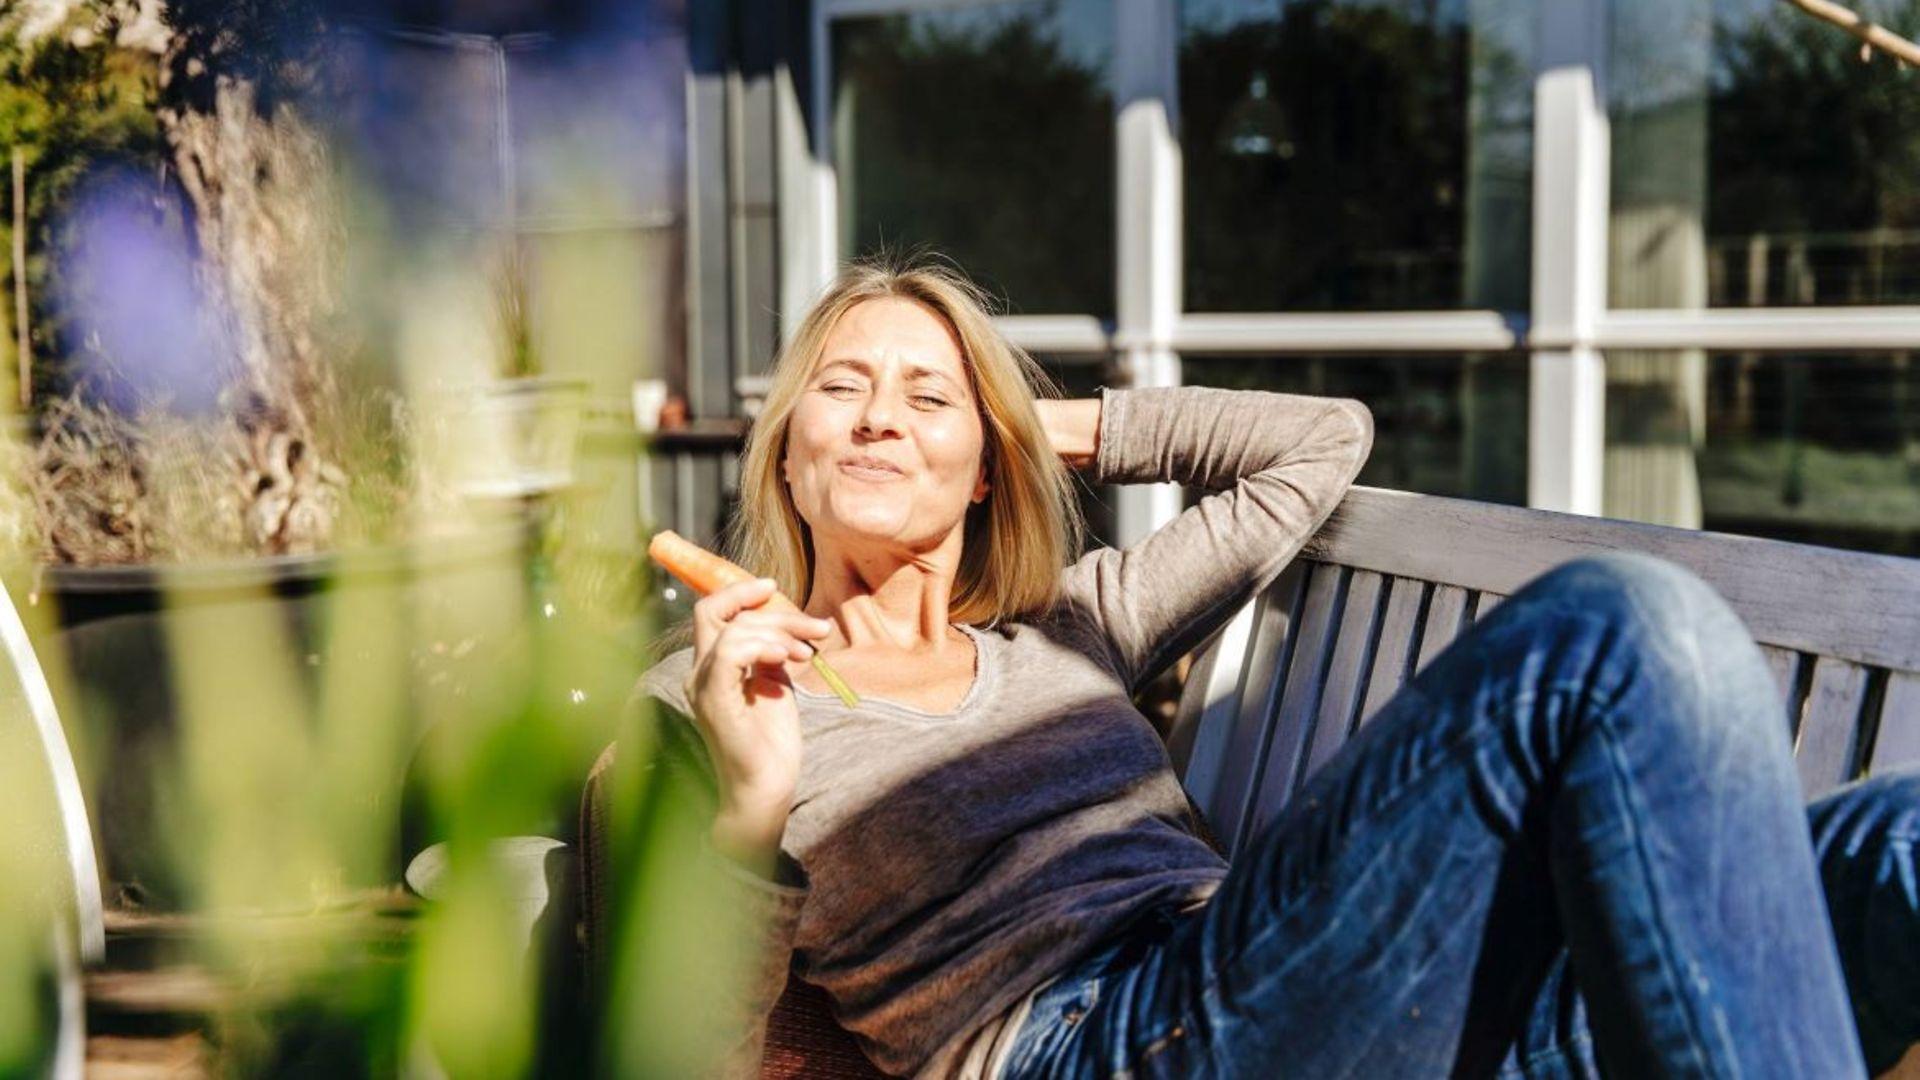 Frau relaxt auf einer Gartenliege und genießt die Sonnenstrahlen